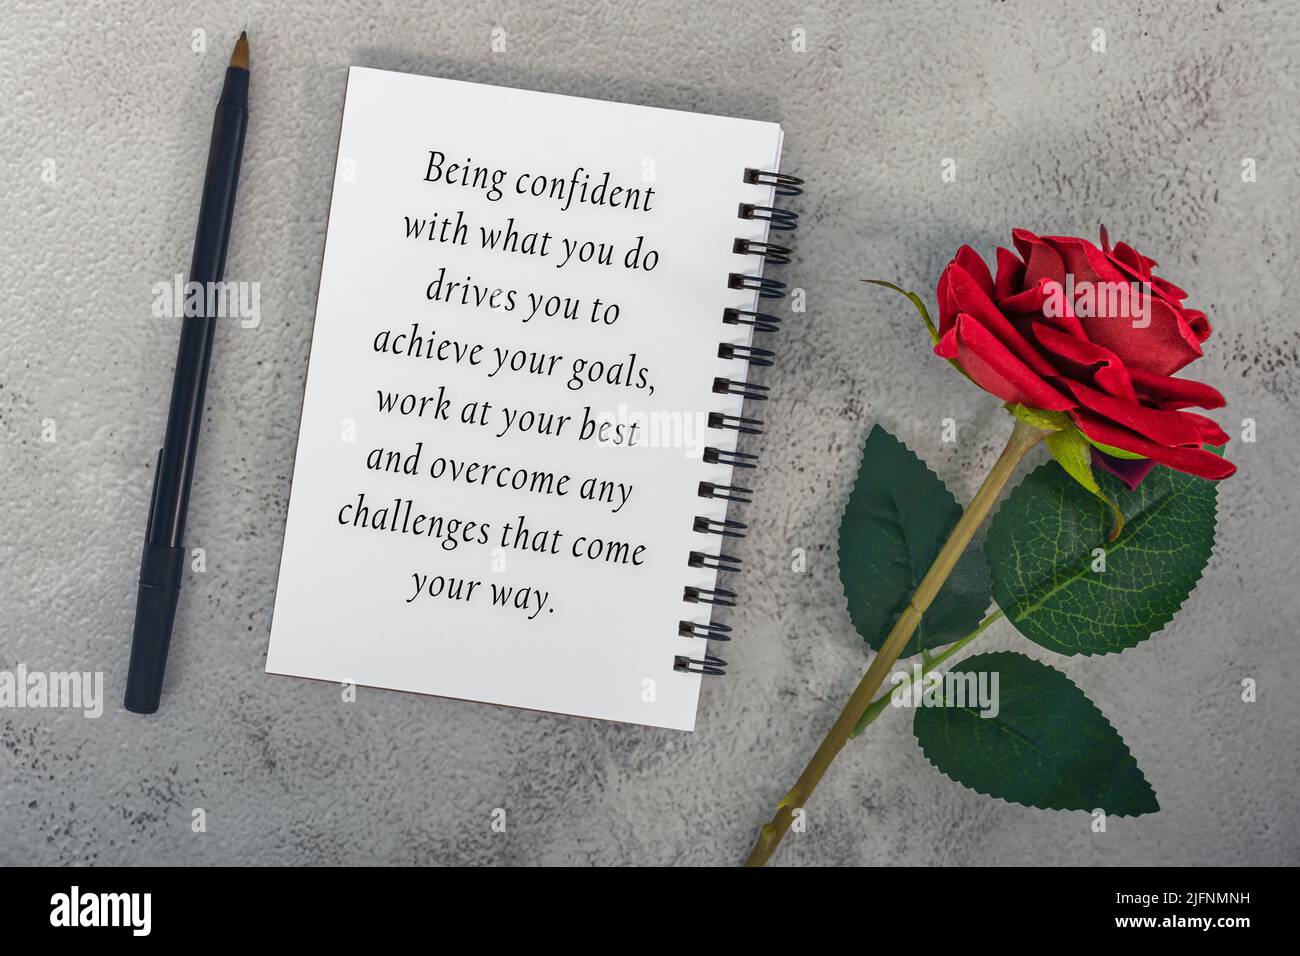 Motivierendes Zitat auf Notiz Buch mit roten Rosen und einem Stift - selbstbewusst mit dem, was Sie tun, treibt Sie, um Ihre Ziele zu erreichen, arbeiten Sie am besten und OV Stockfoto